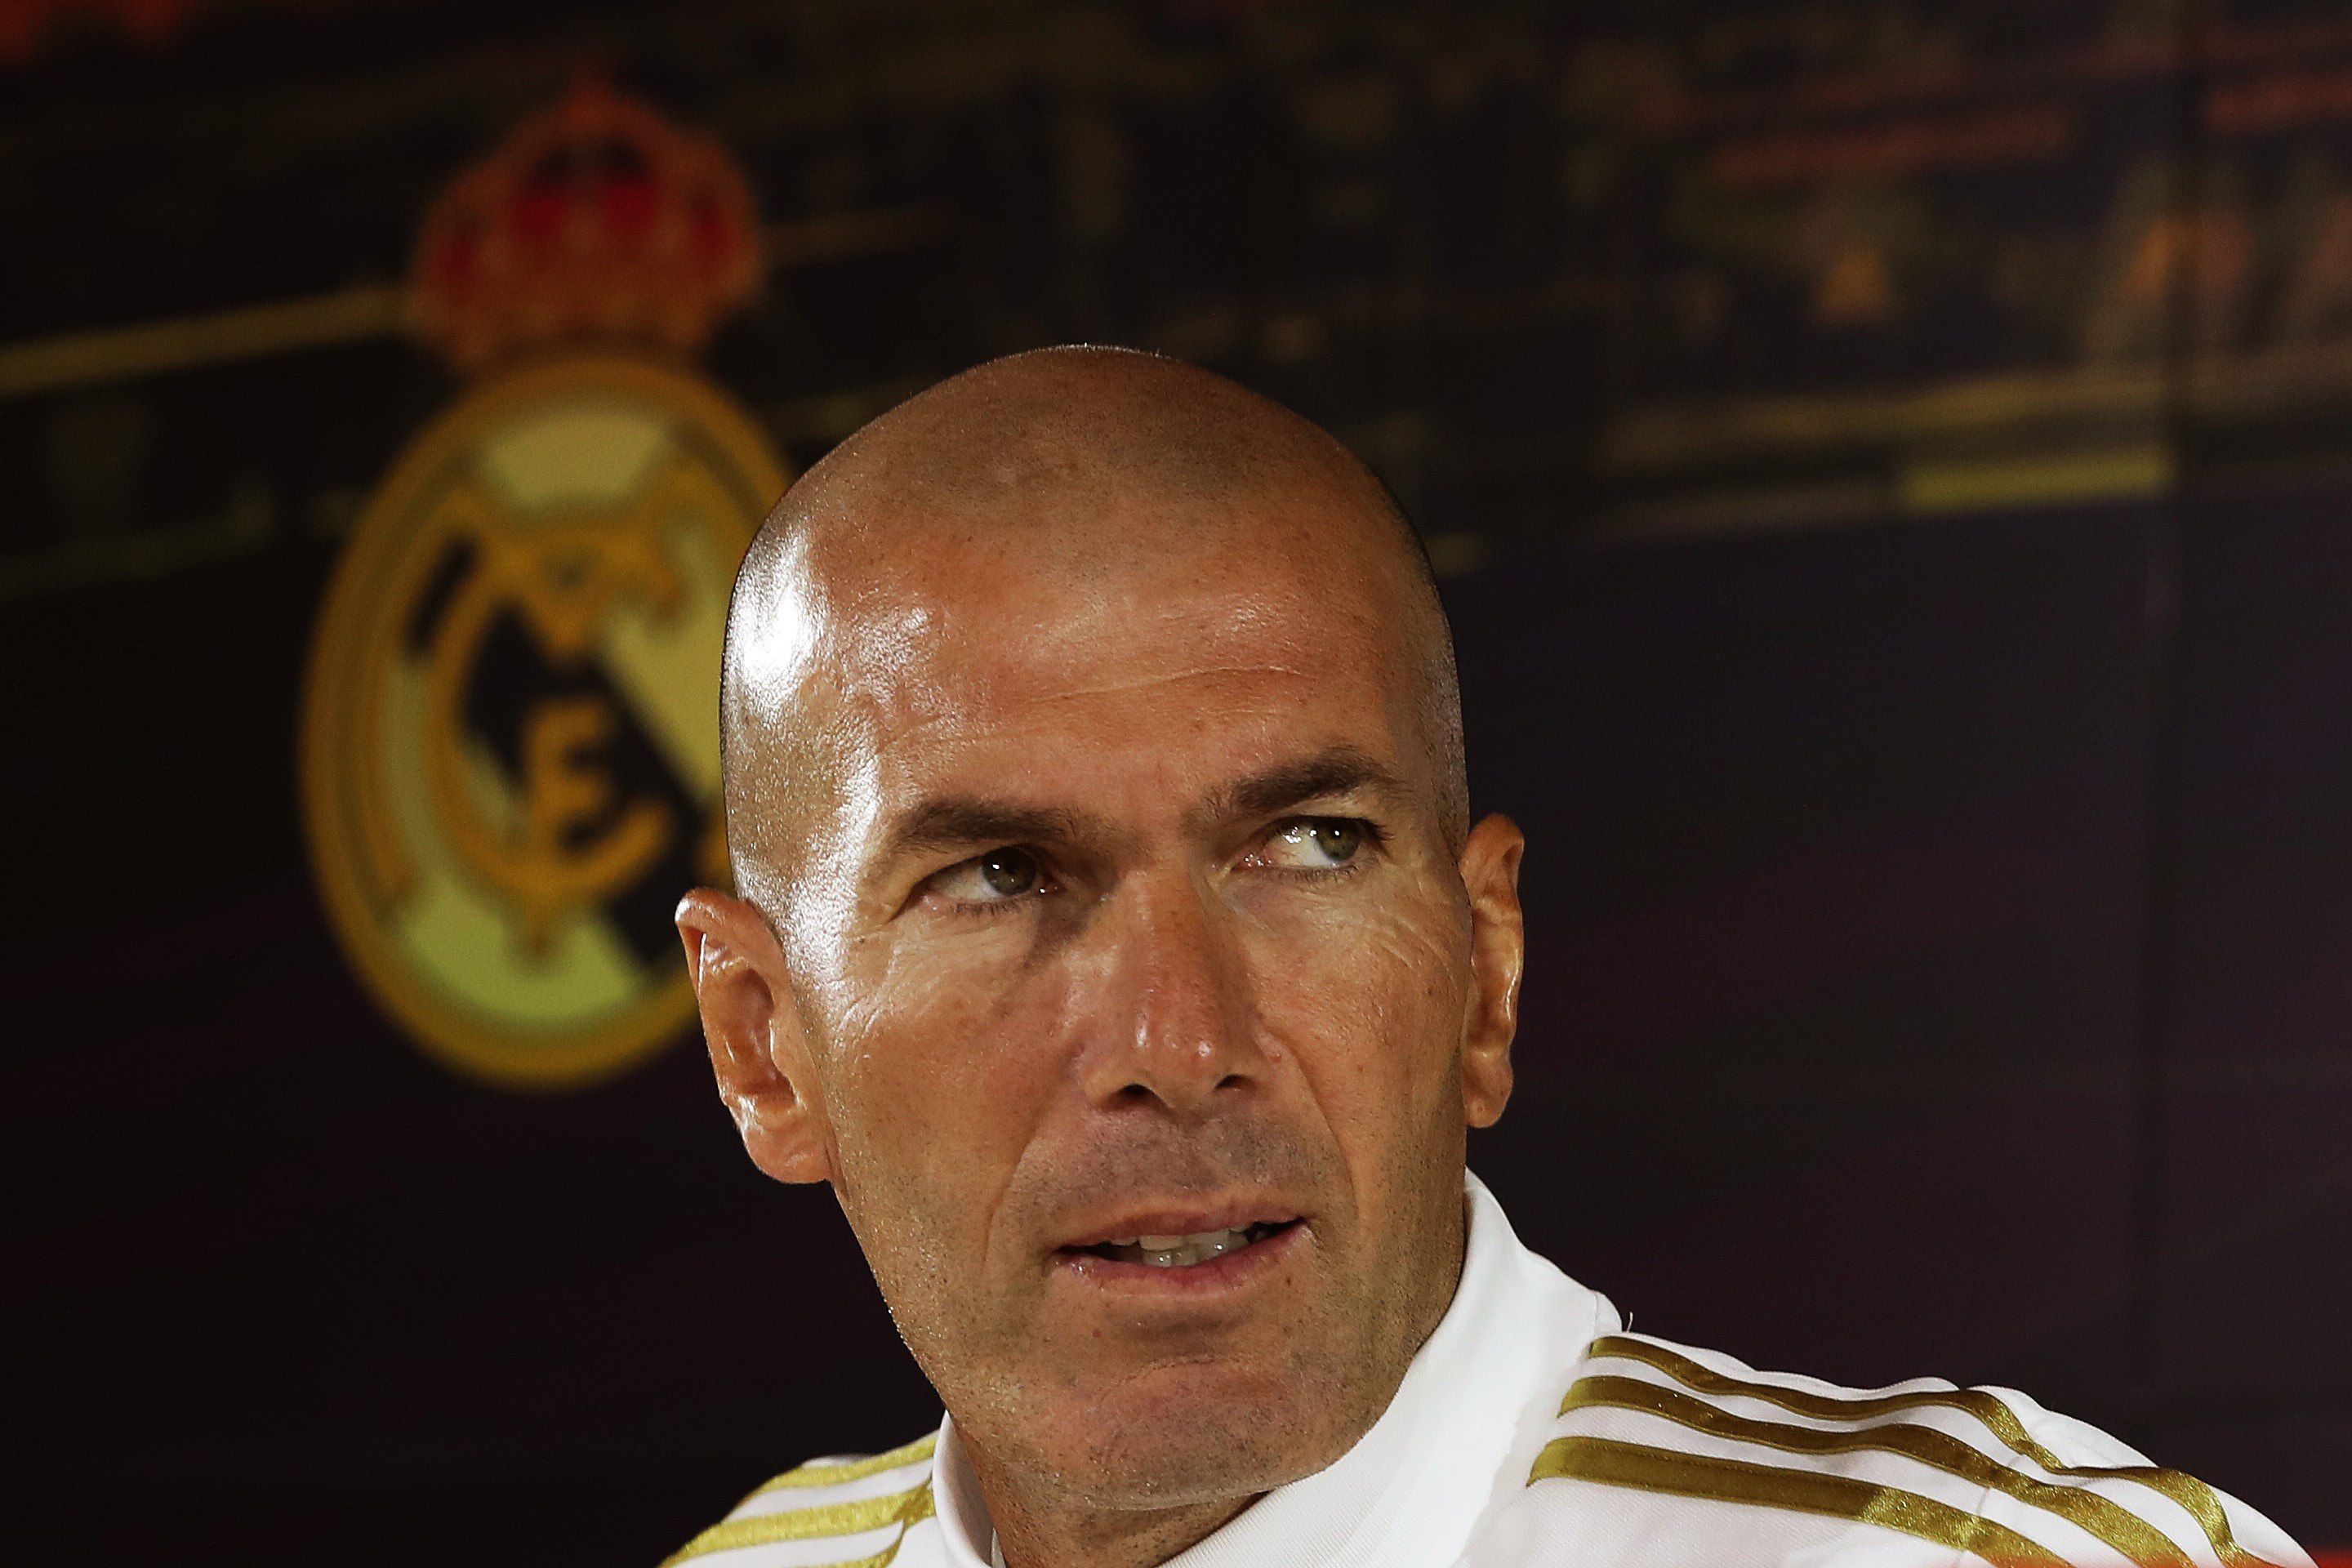  El entrenador francés del Real Madrid, Zinedine Zidane, critica el calendario de competencias. (Foto Prensa Libre: EFE)